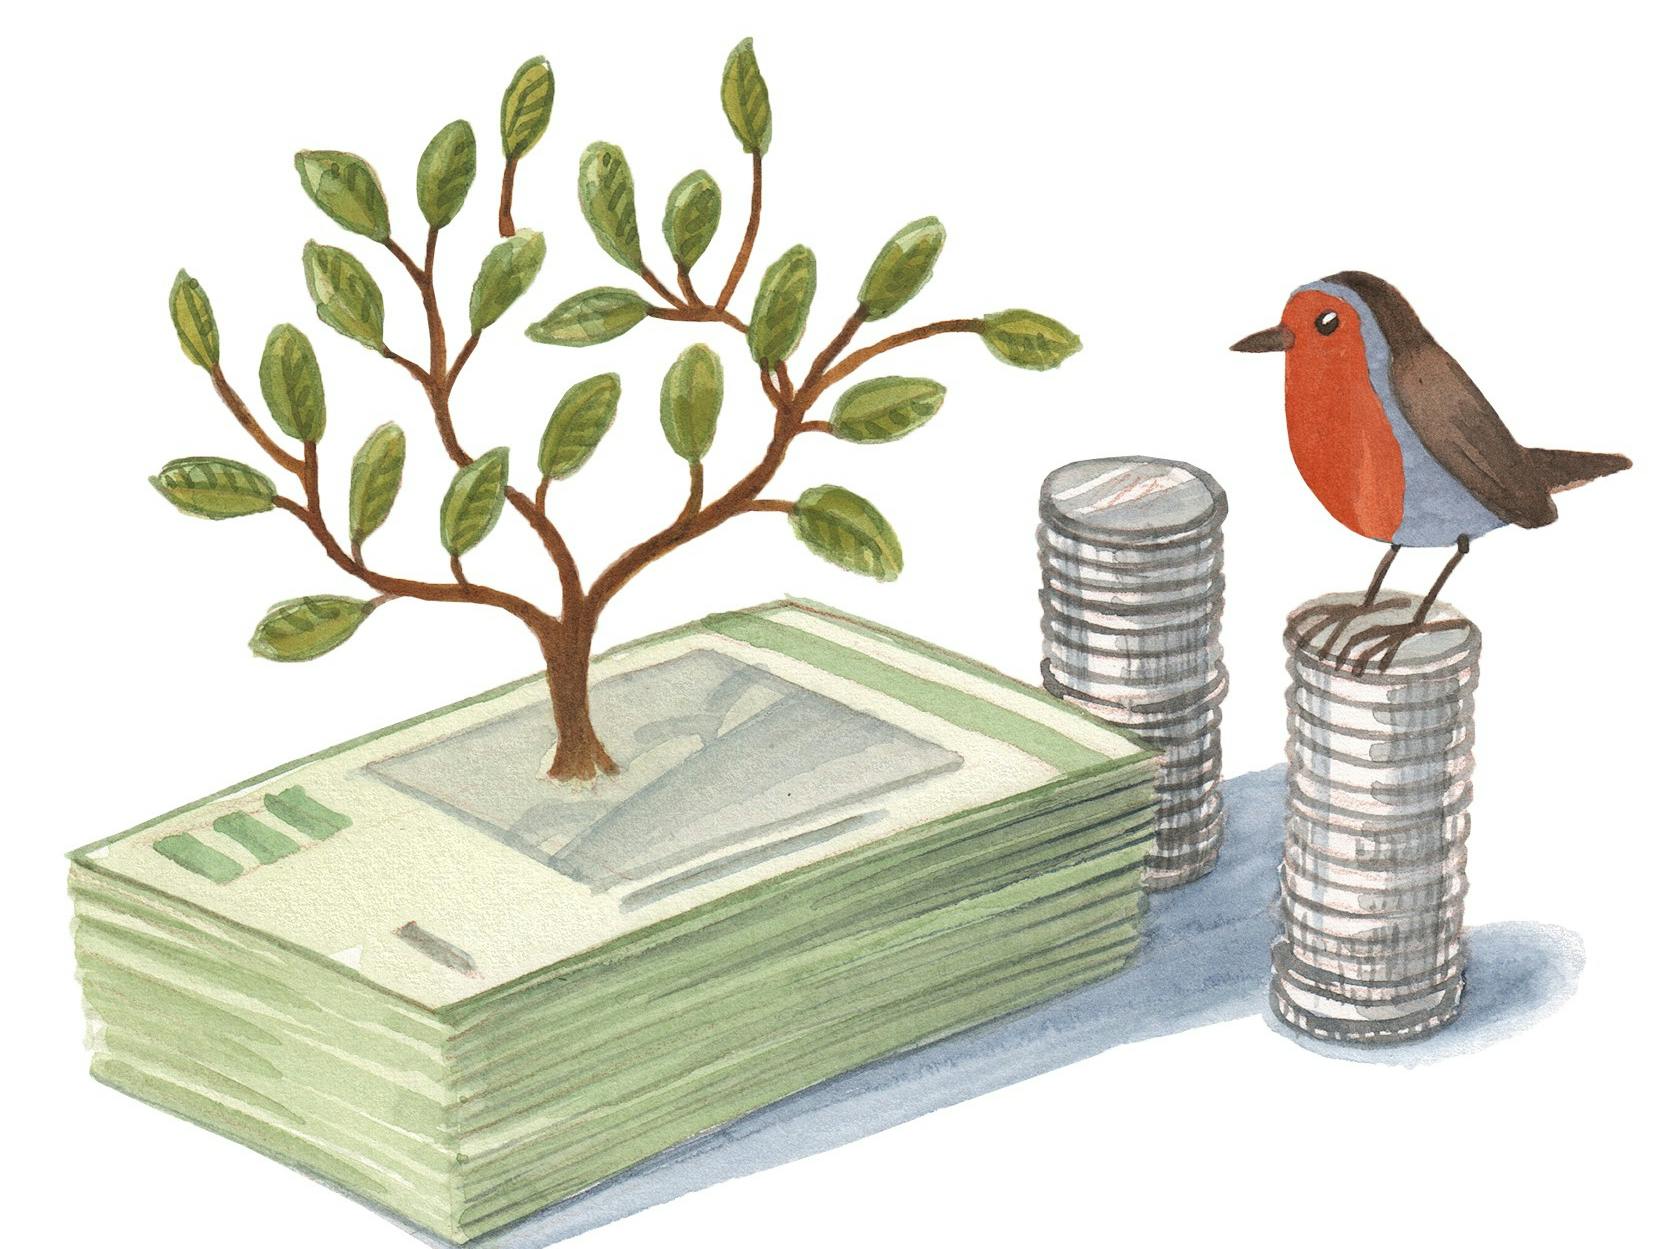 En lille fugl, en træ og nogle penge